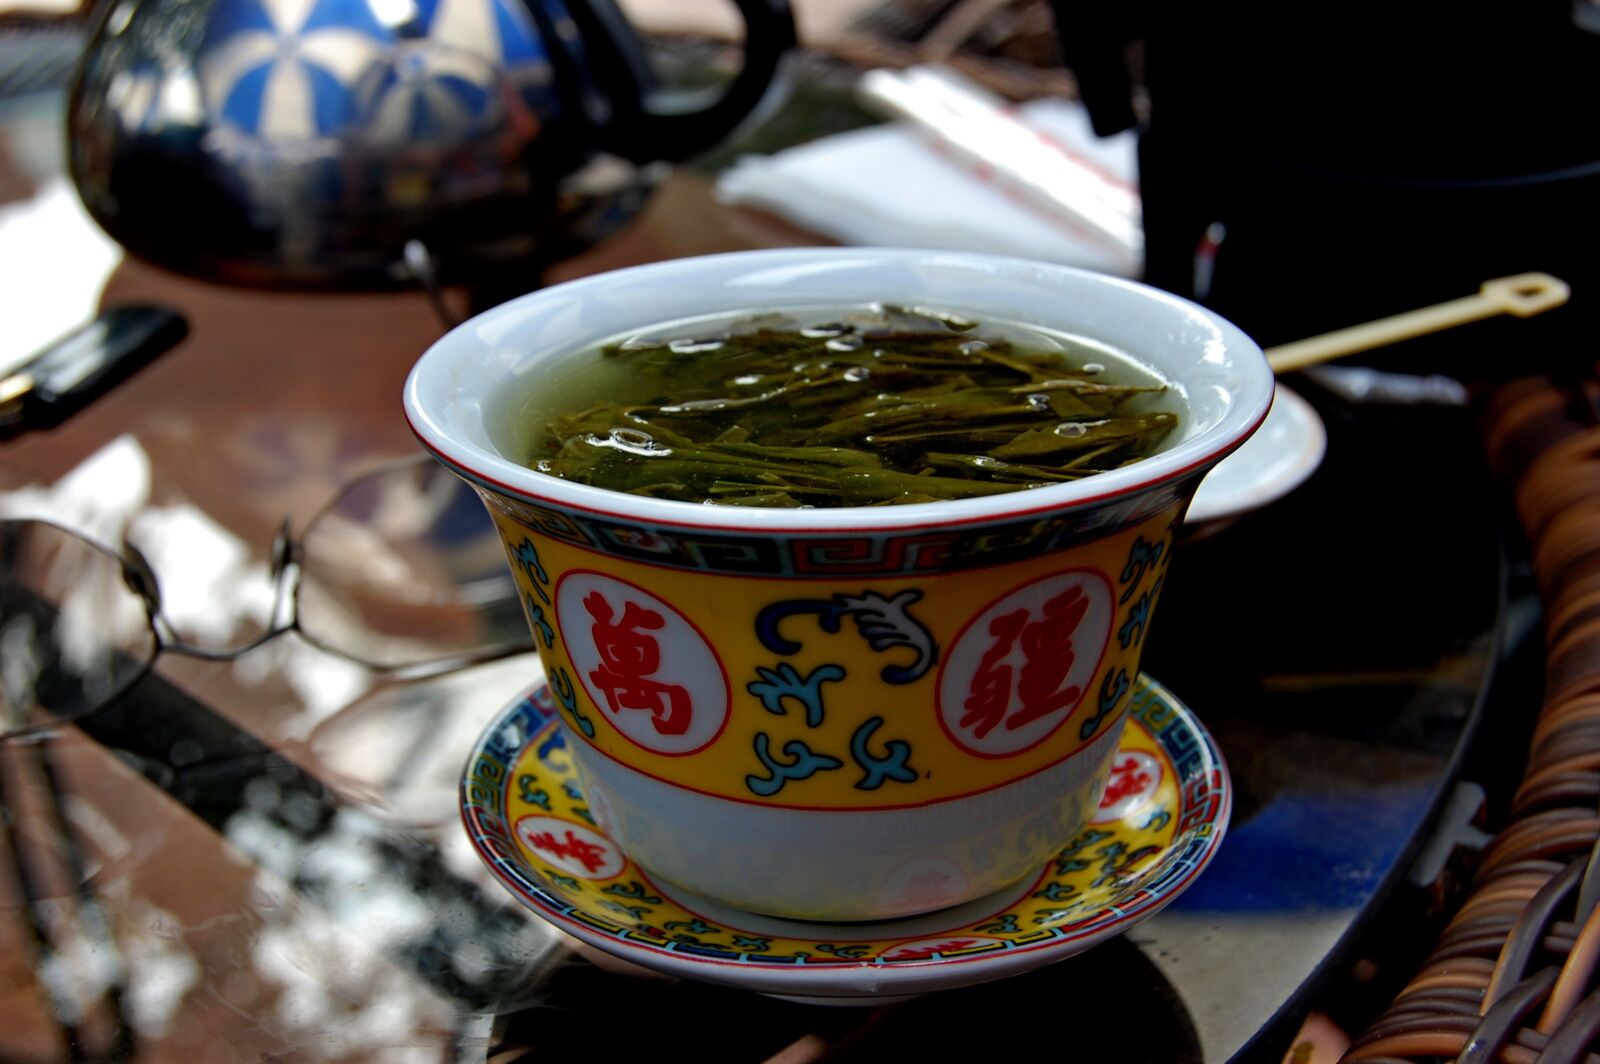 Nikon D40 sample photo. China, tea, teacup photography